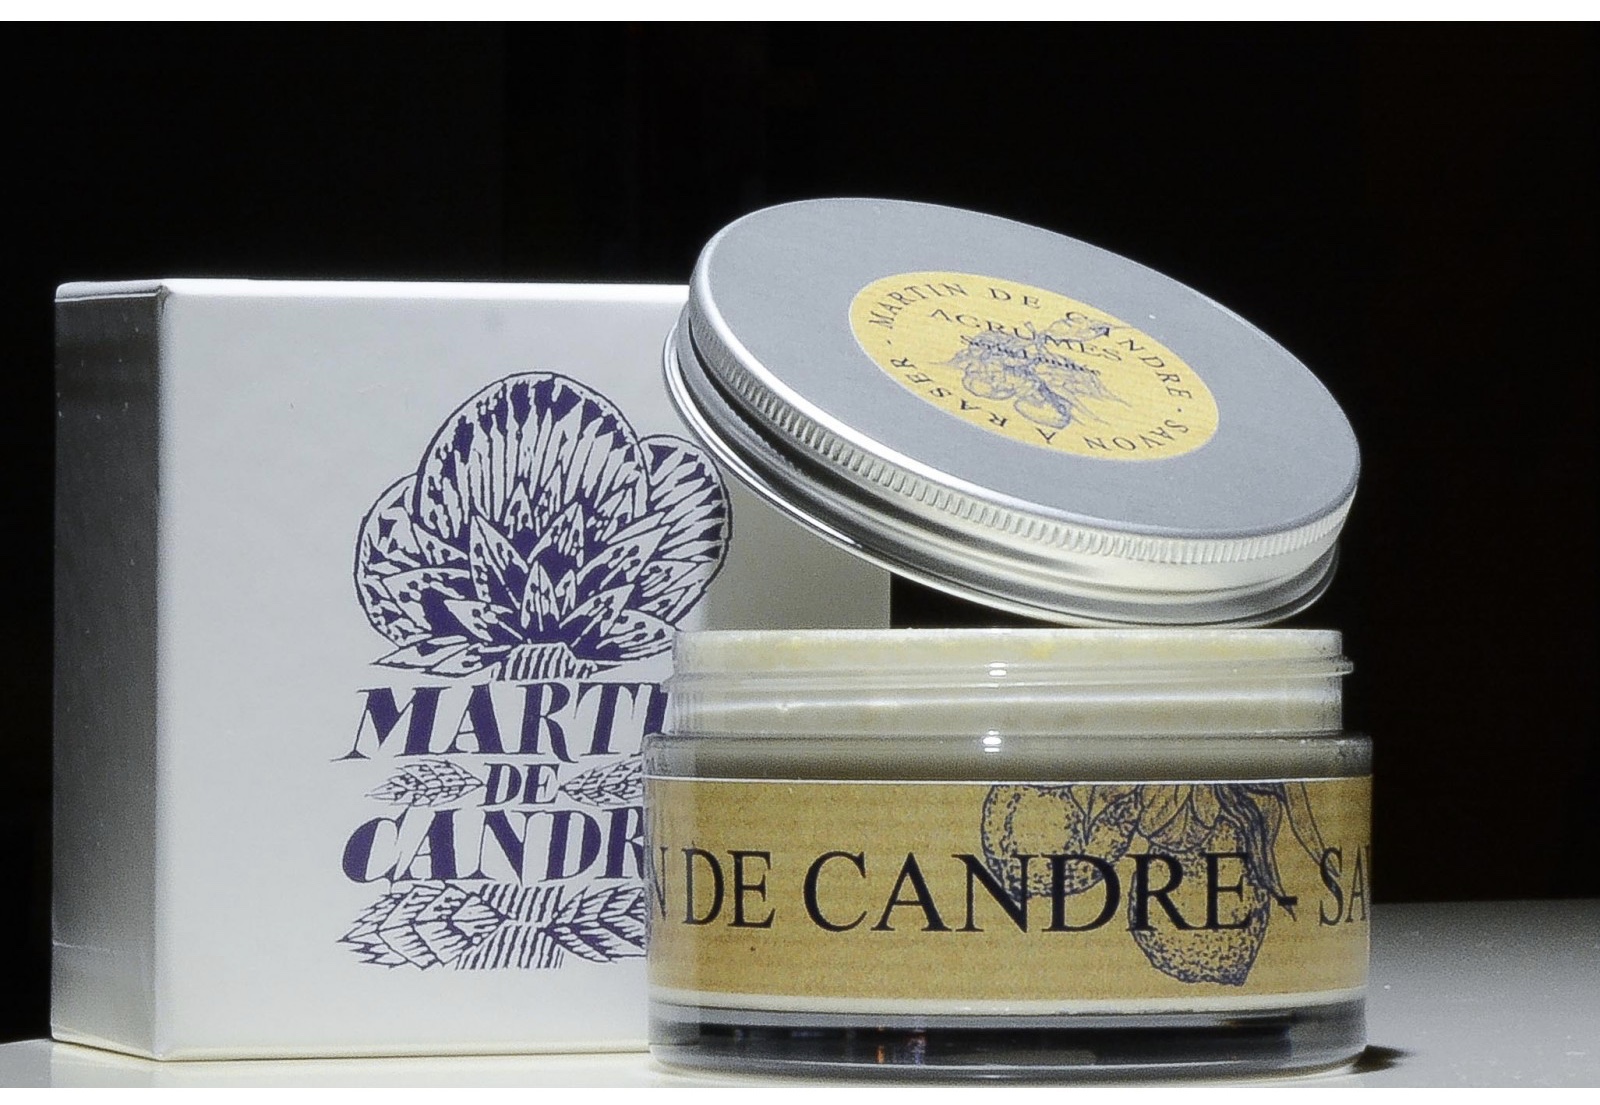 Jabón de Afeitar Martin de Candre - Agrumes (Limón) 200g